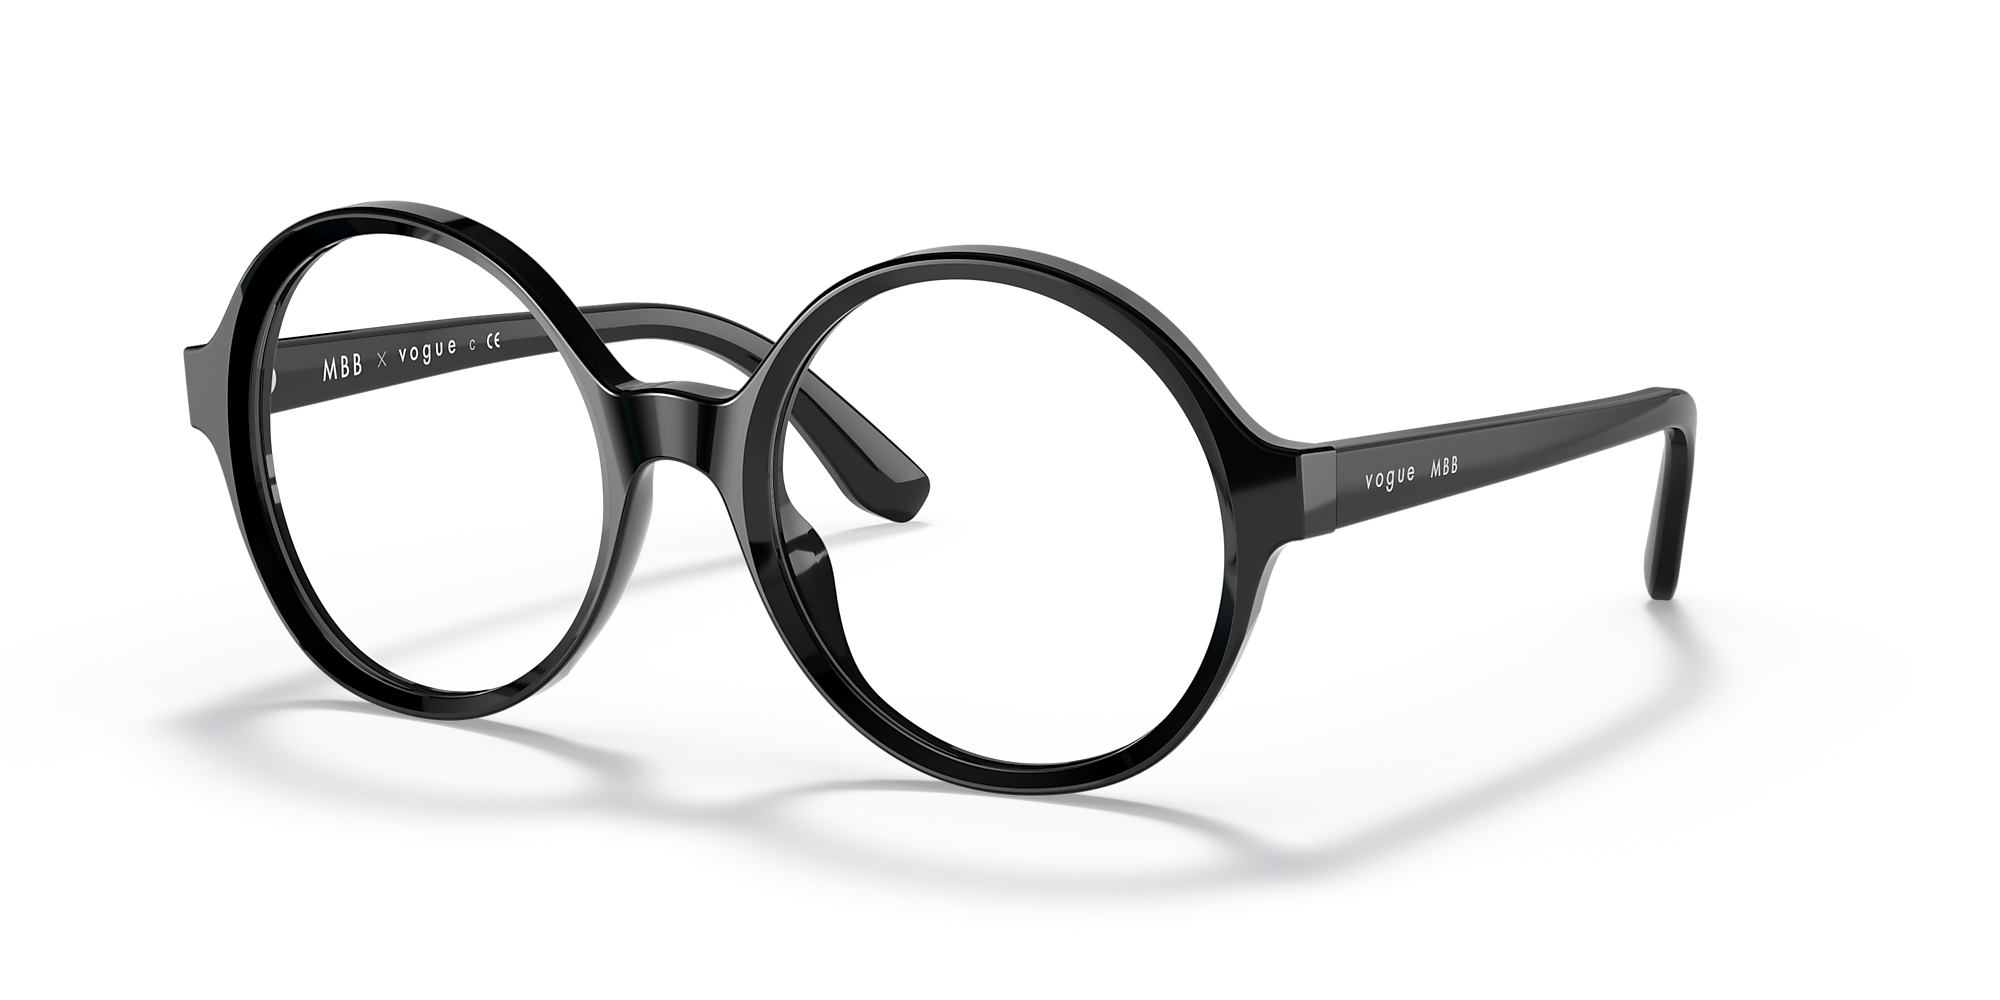 #MBBDiaries London Eyeglasses - Black